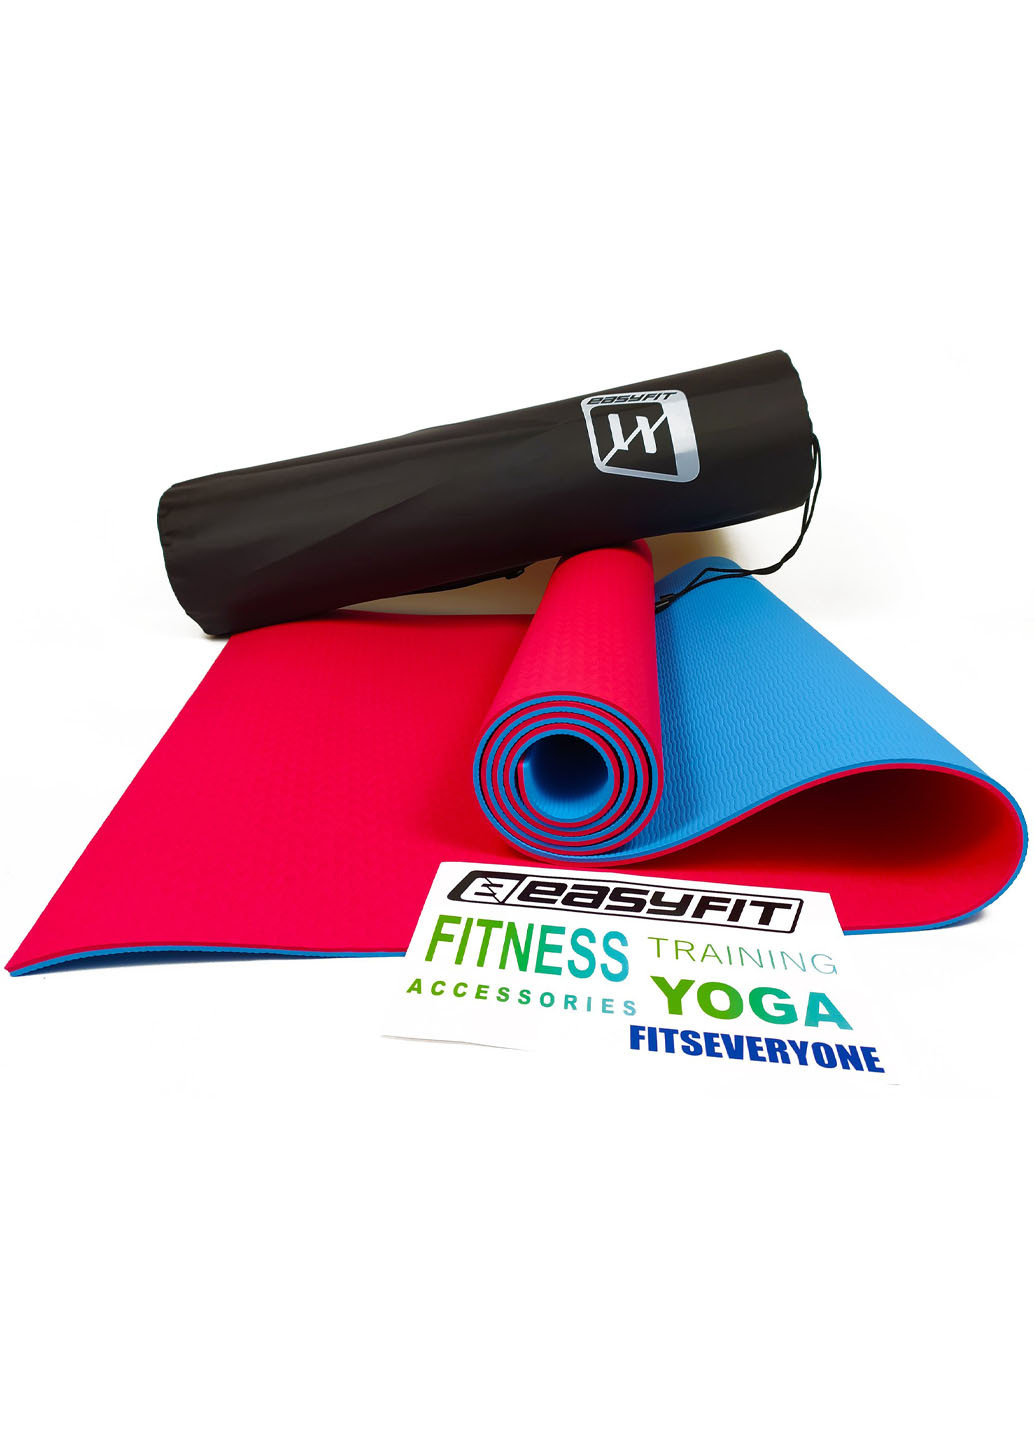 Килимок для йоги TPE + TC ECO-Friendly 6 мм червоний з блакитним (мат-каремат спортивний, йогамат для фітнесу, пілатесу) EasyFit (237596286)